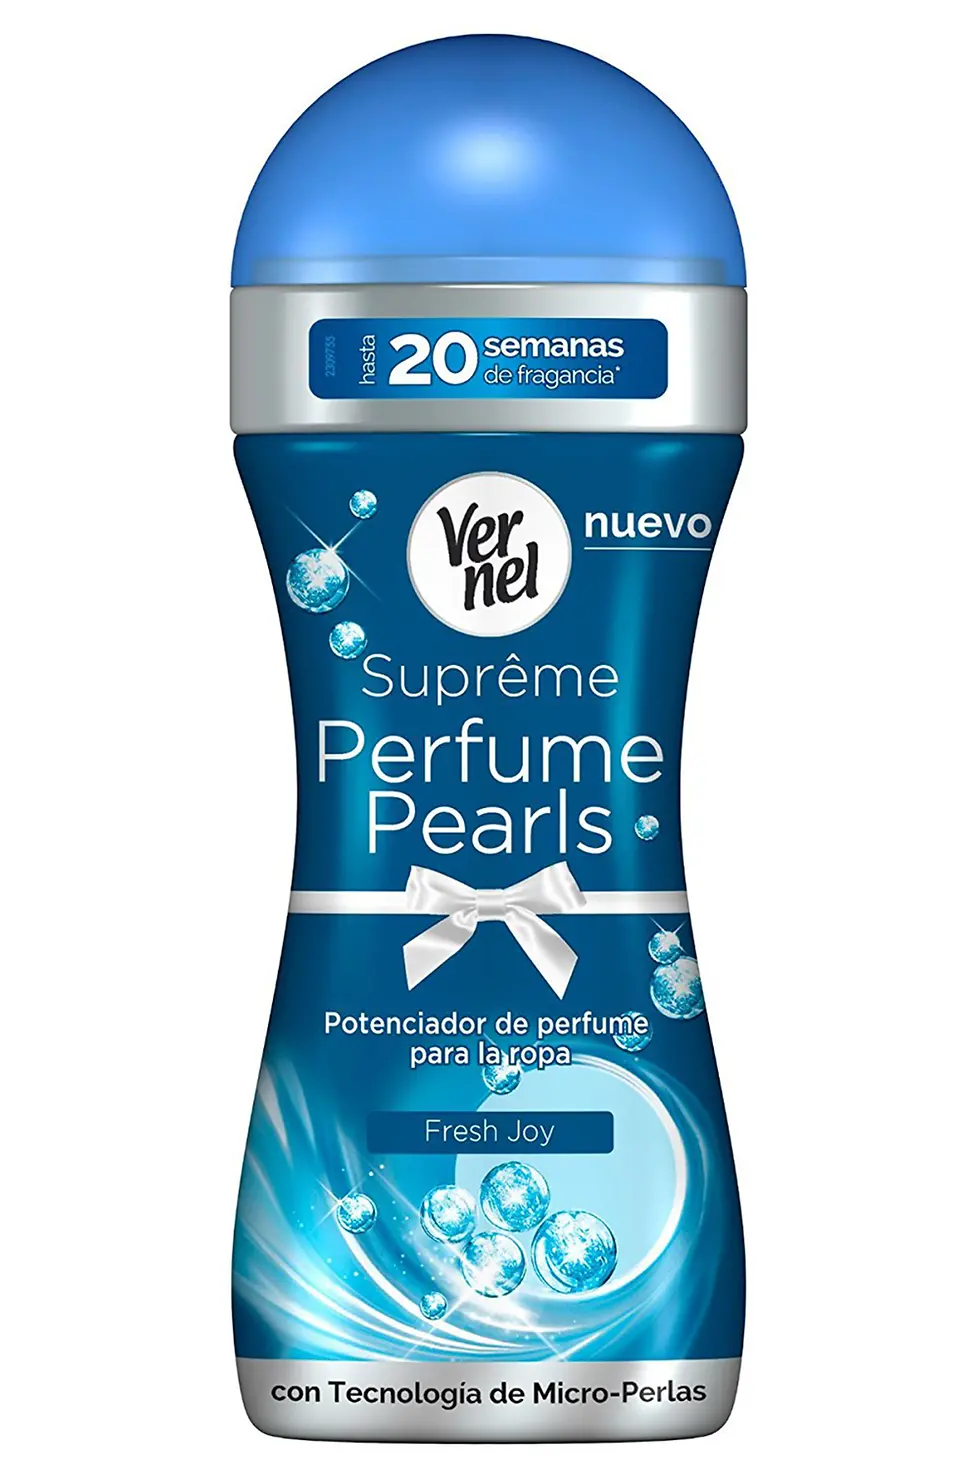 Vernel presenta Suprême Perfume Pearls, el innovador potenciador de perfume  para la ropa